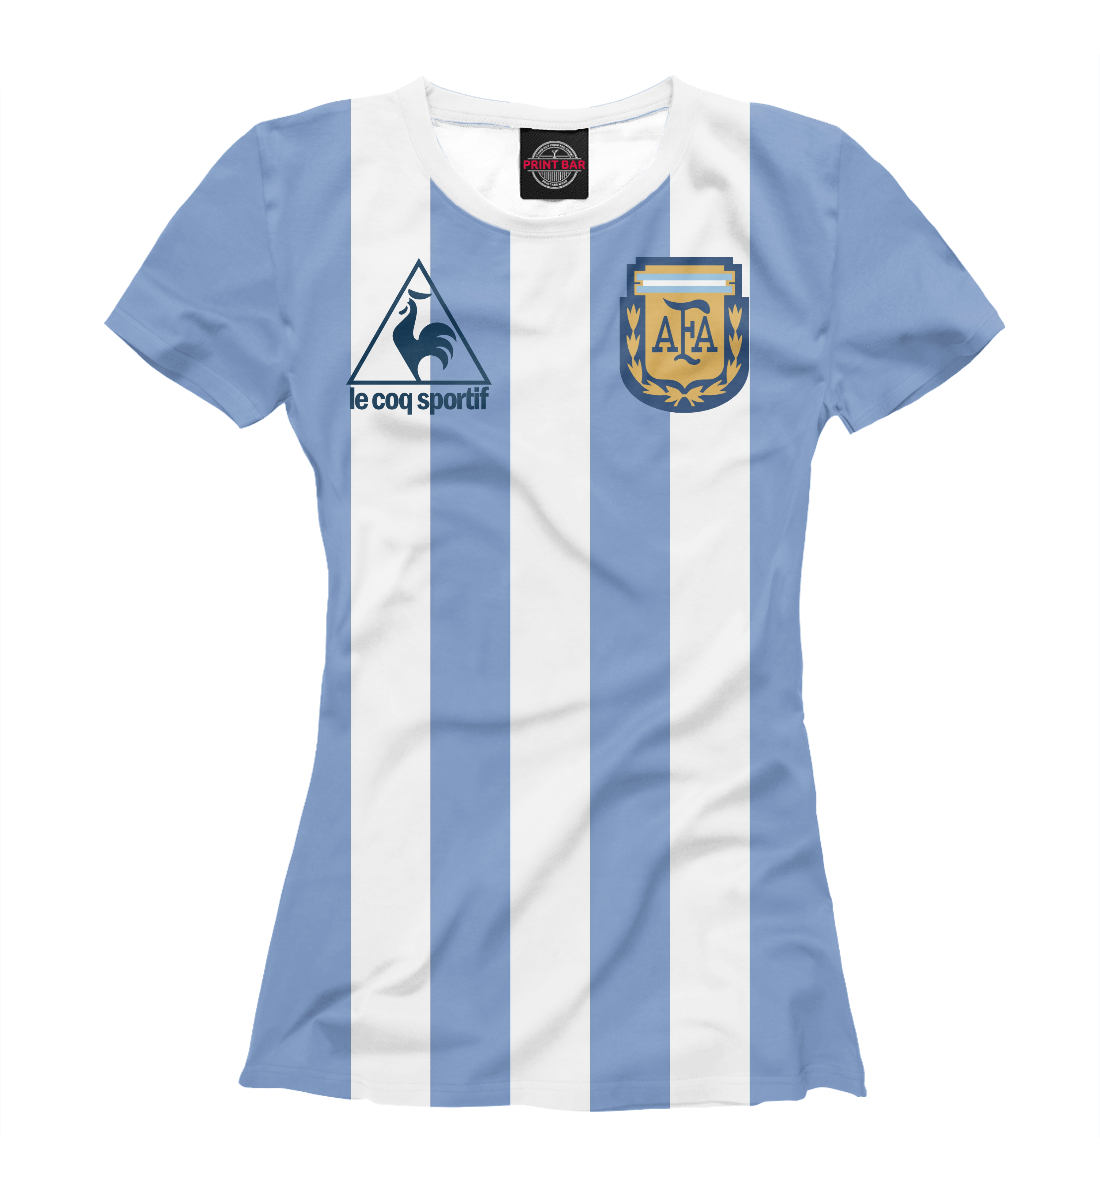 Футболка Maradona для девочек, артикул: SAN-232235-fut-1mp